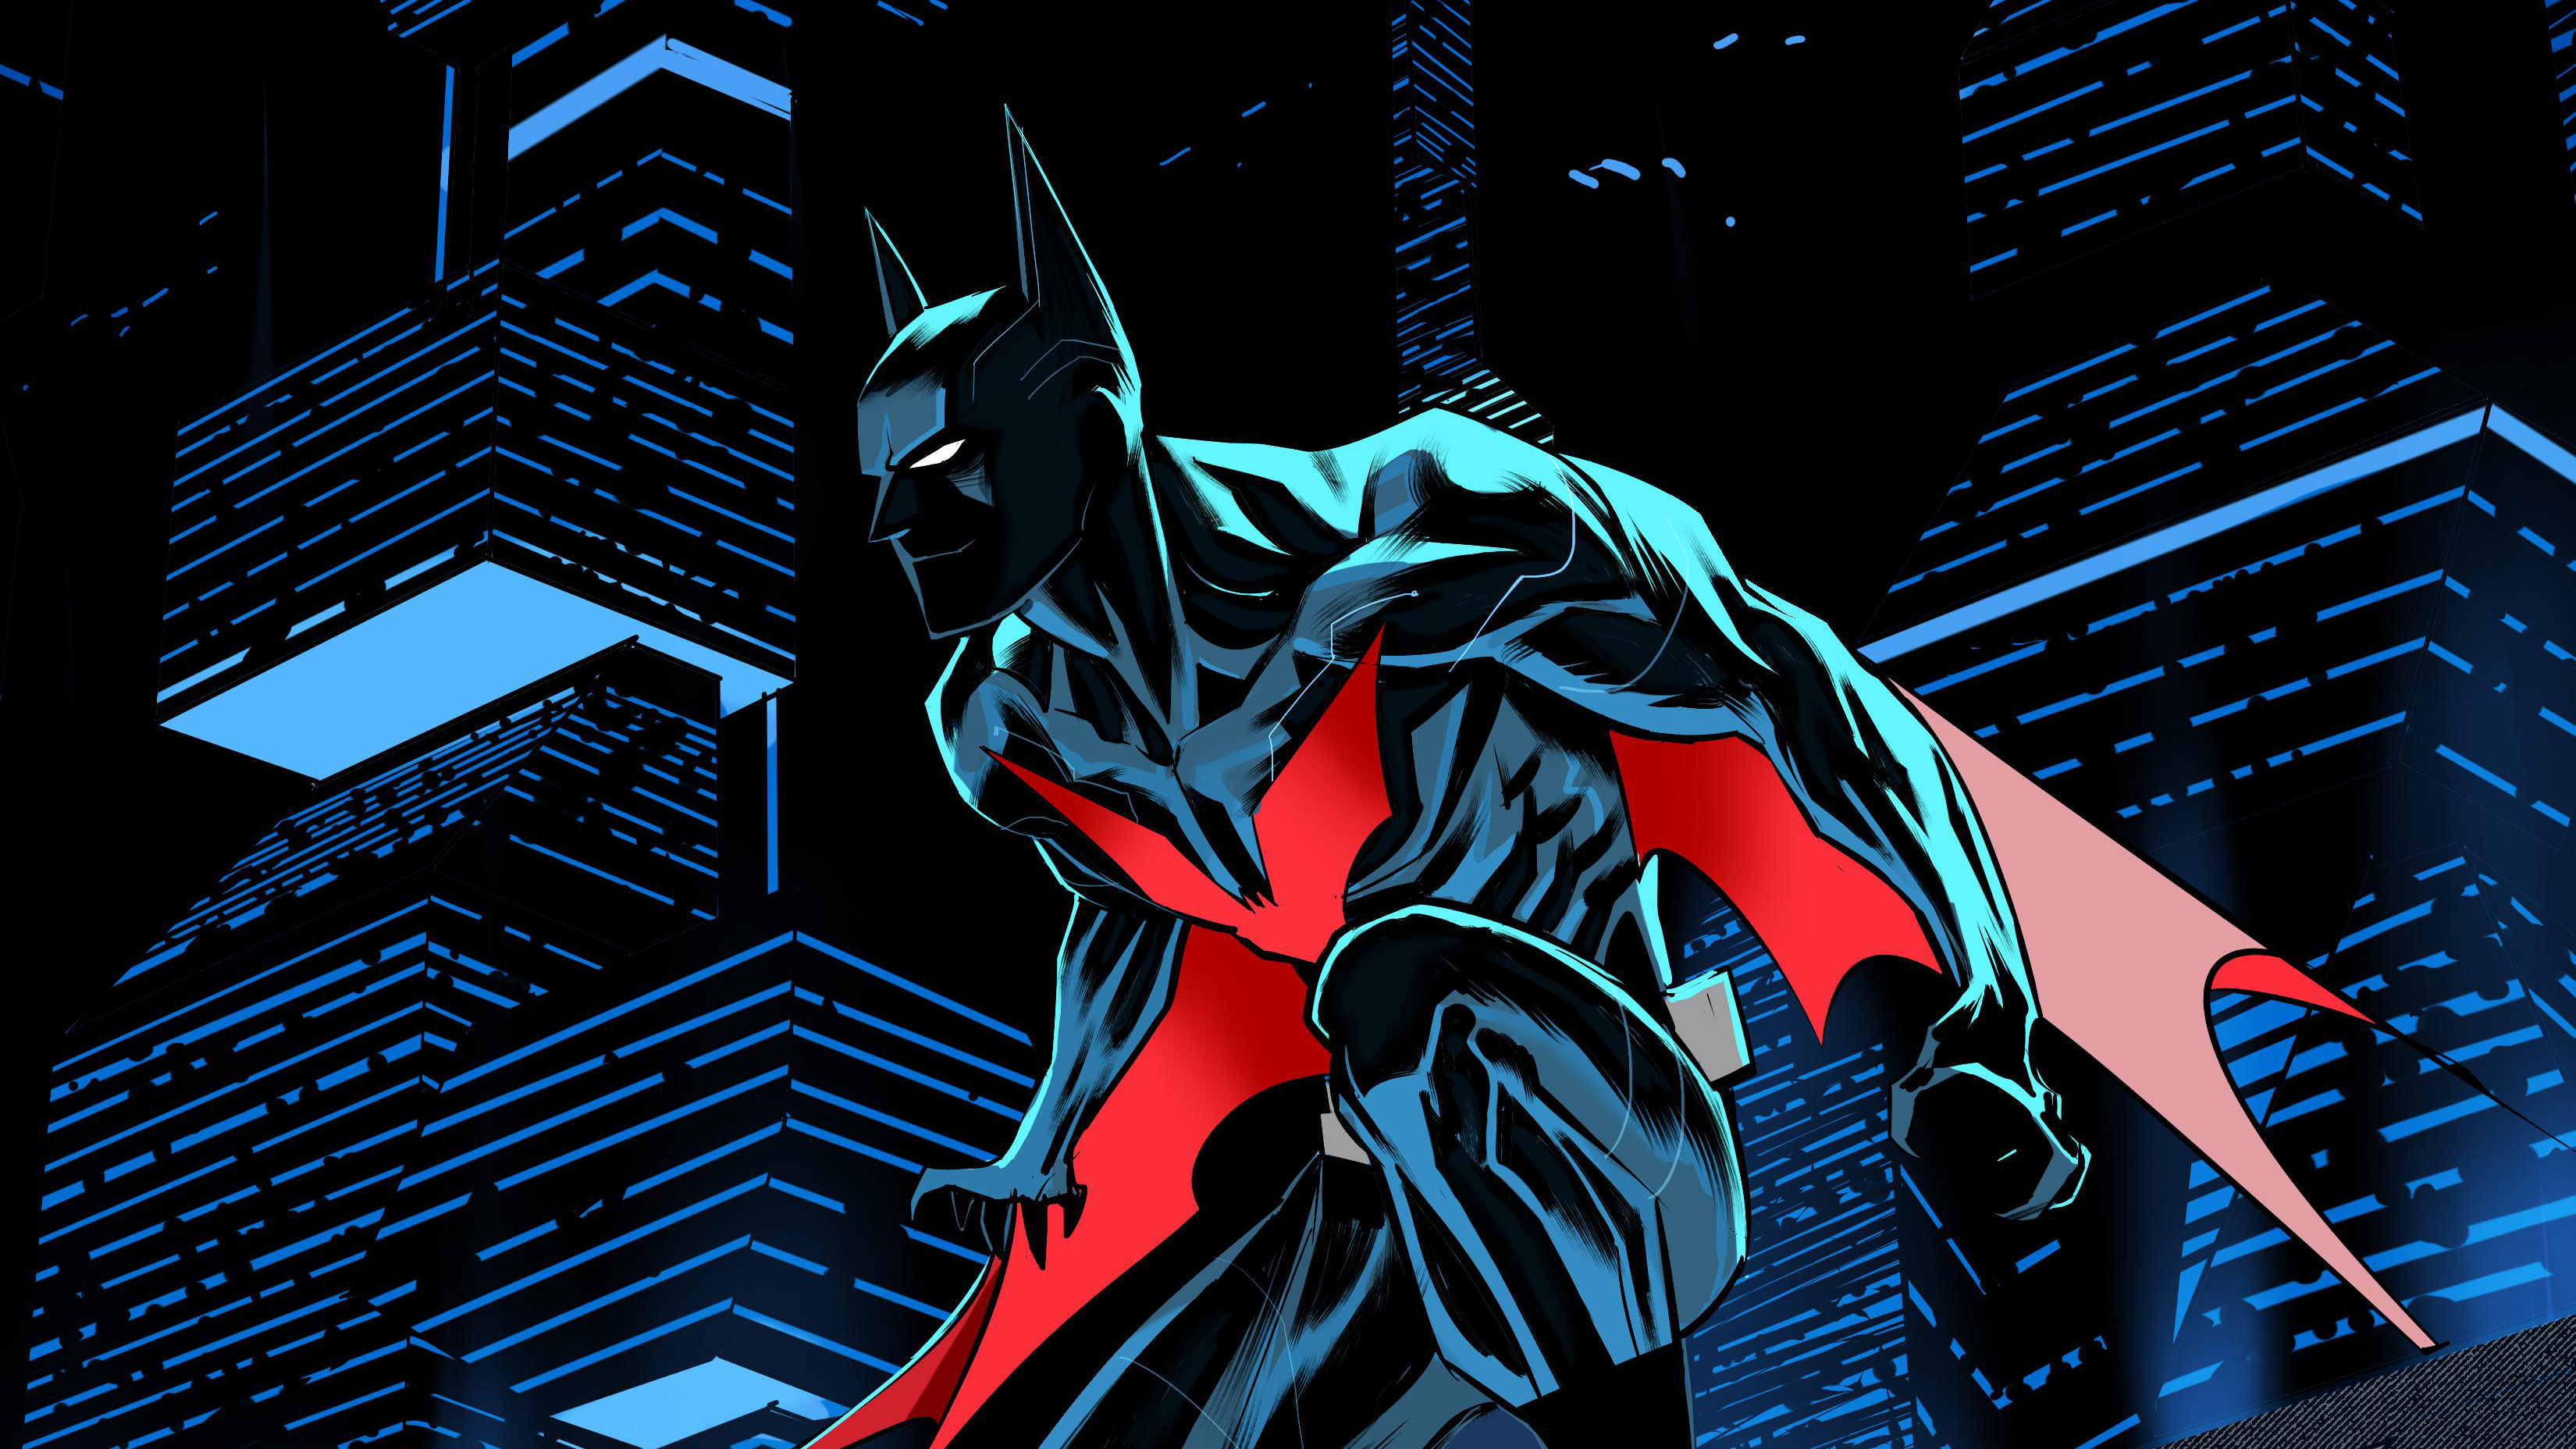 18+] Batman Beyond Comic Wallpapers - WallpaperSafari